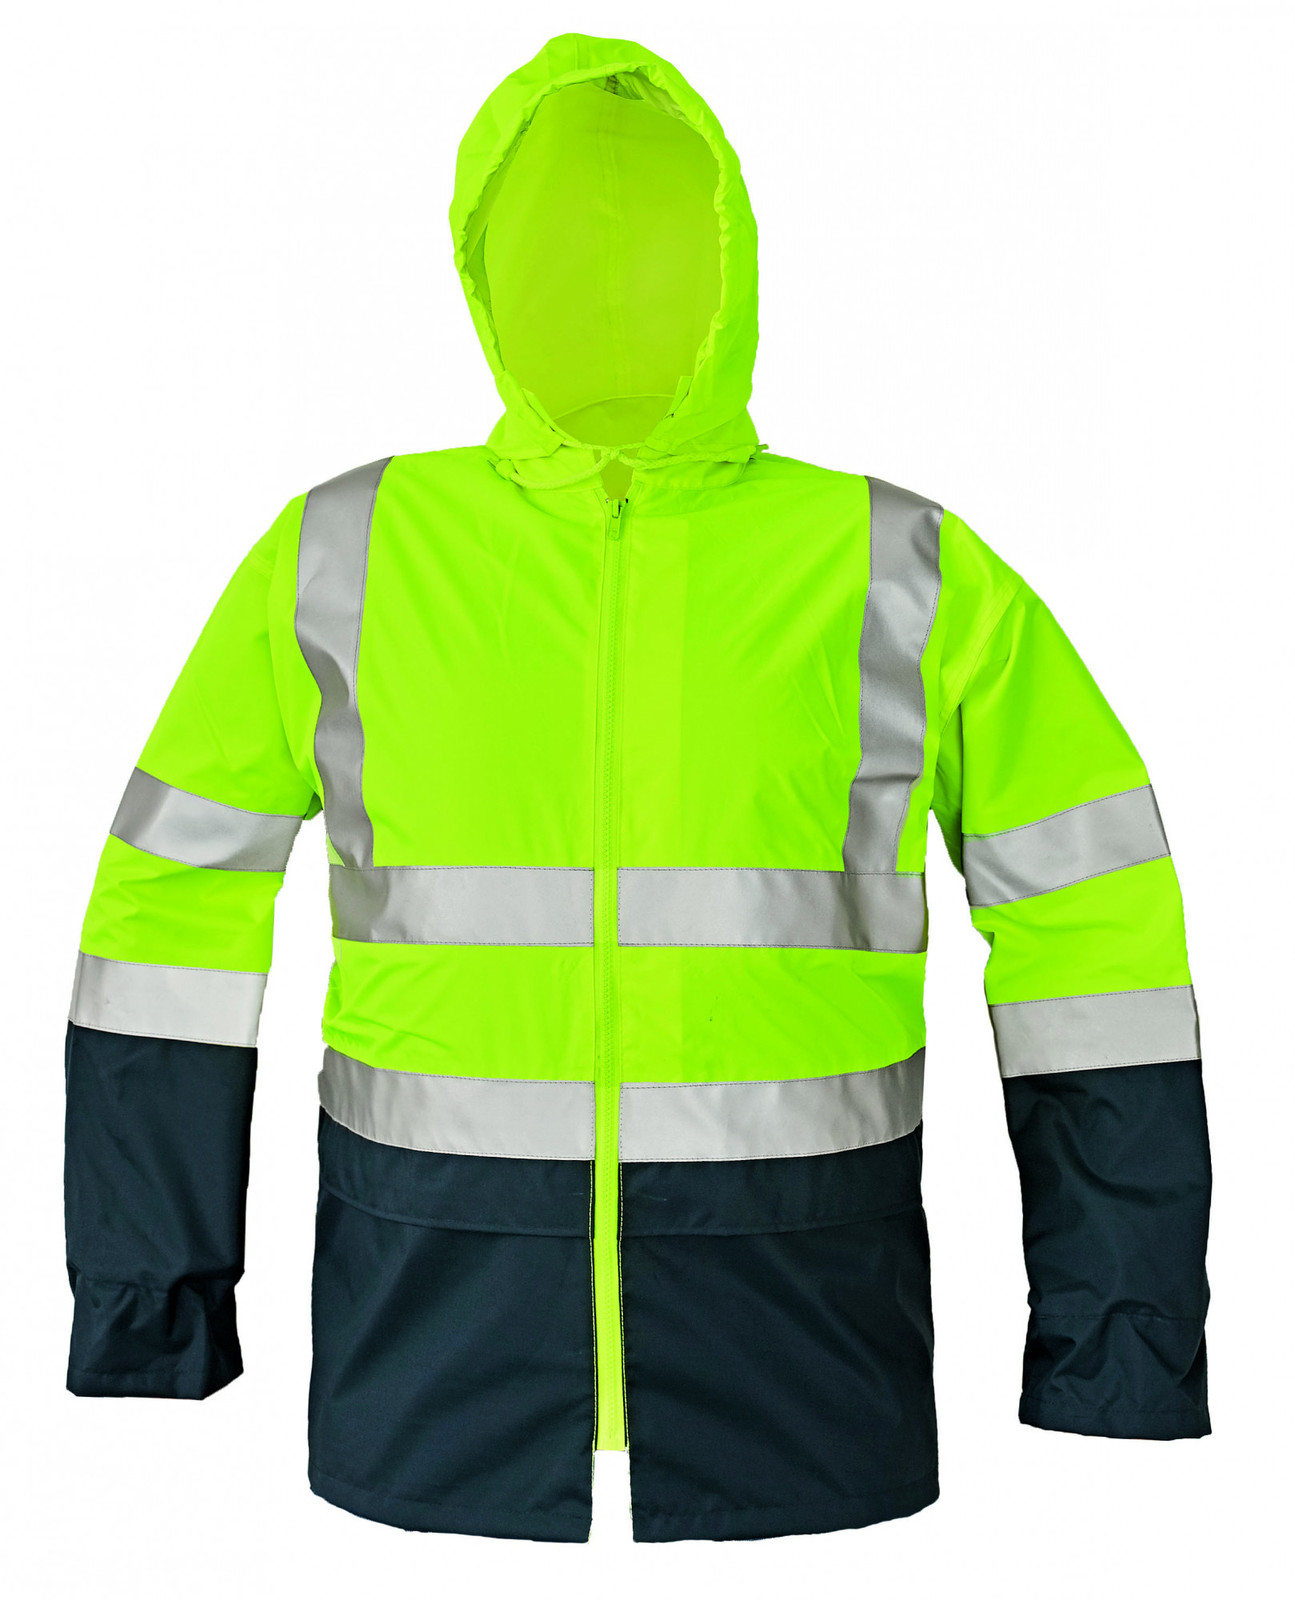 Reflexná pracovná bunda Epping - veľkosť: XL, farba: žltá/navy